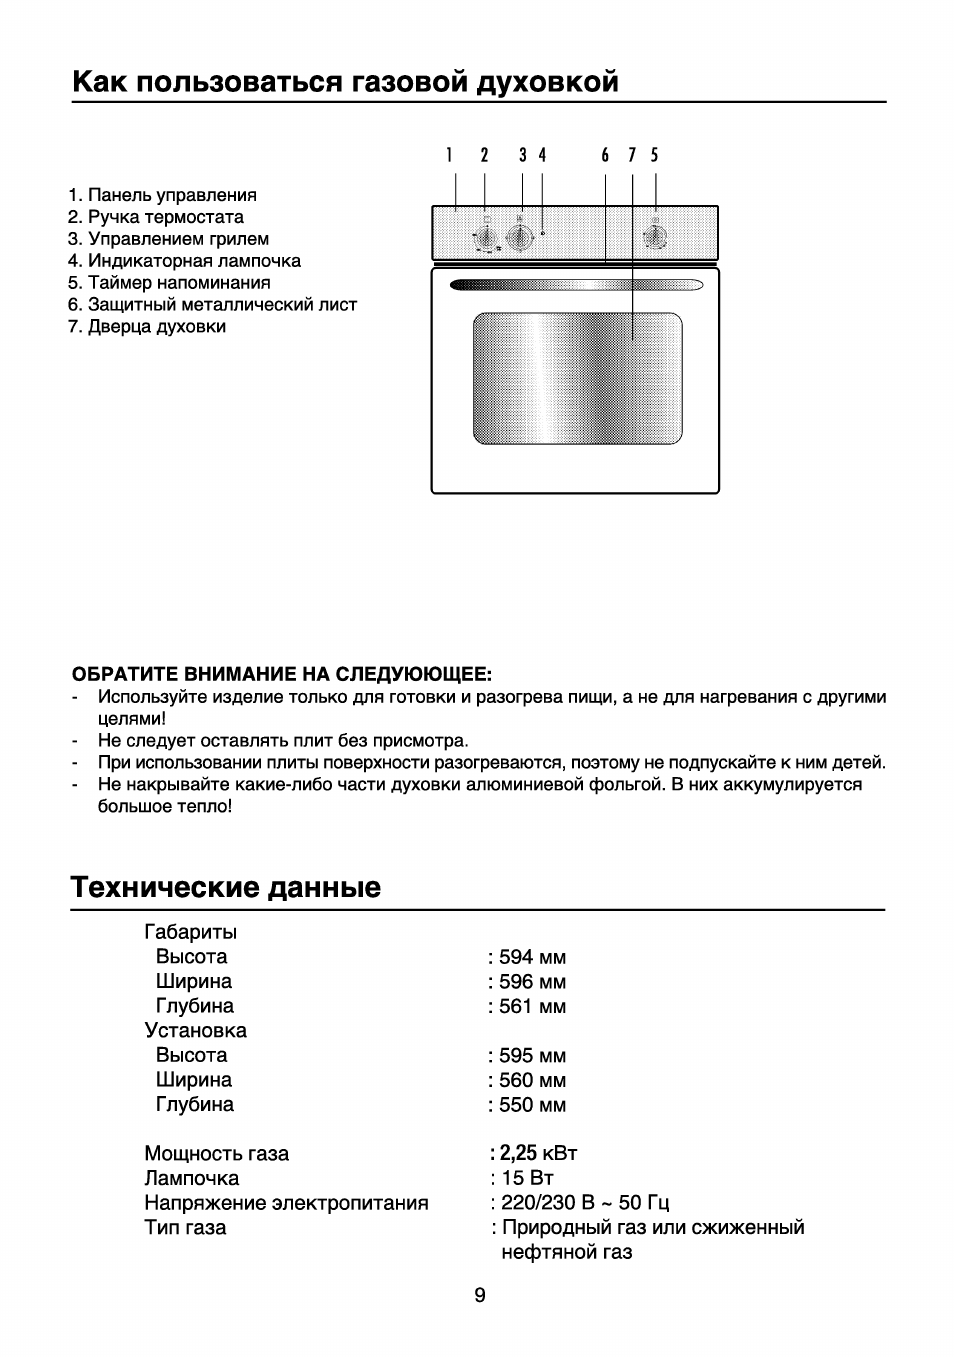 ГАЗ плита Beko духовой шкаф температурный режим